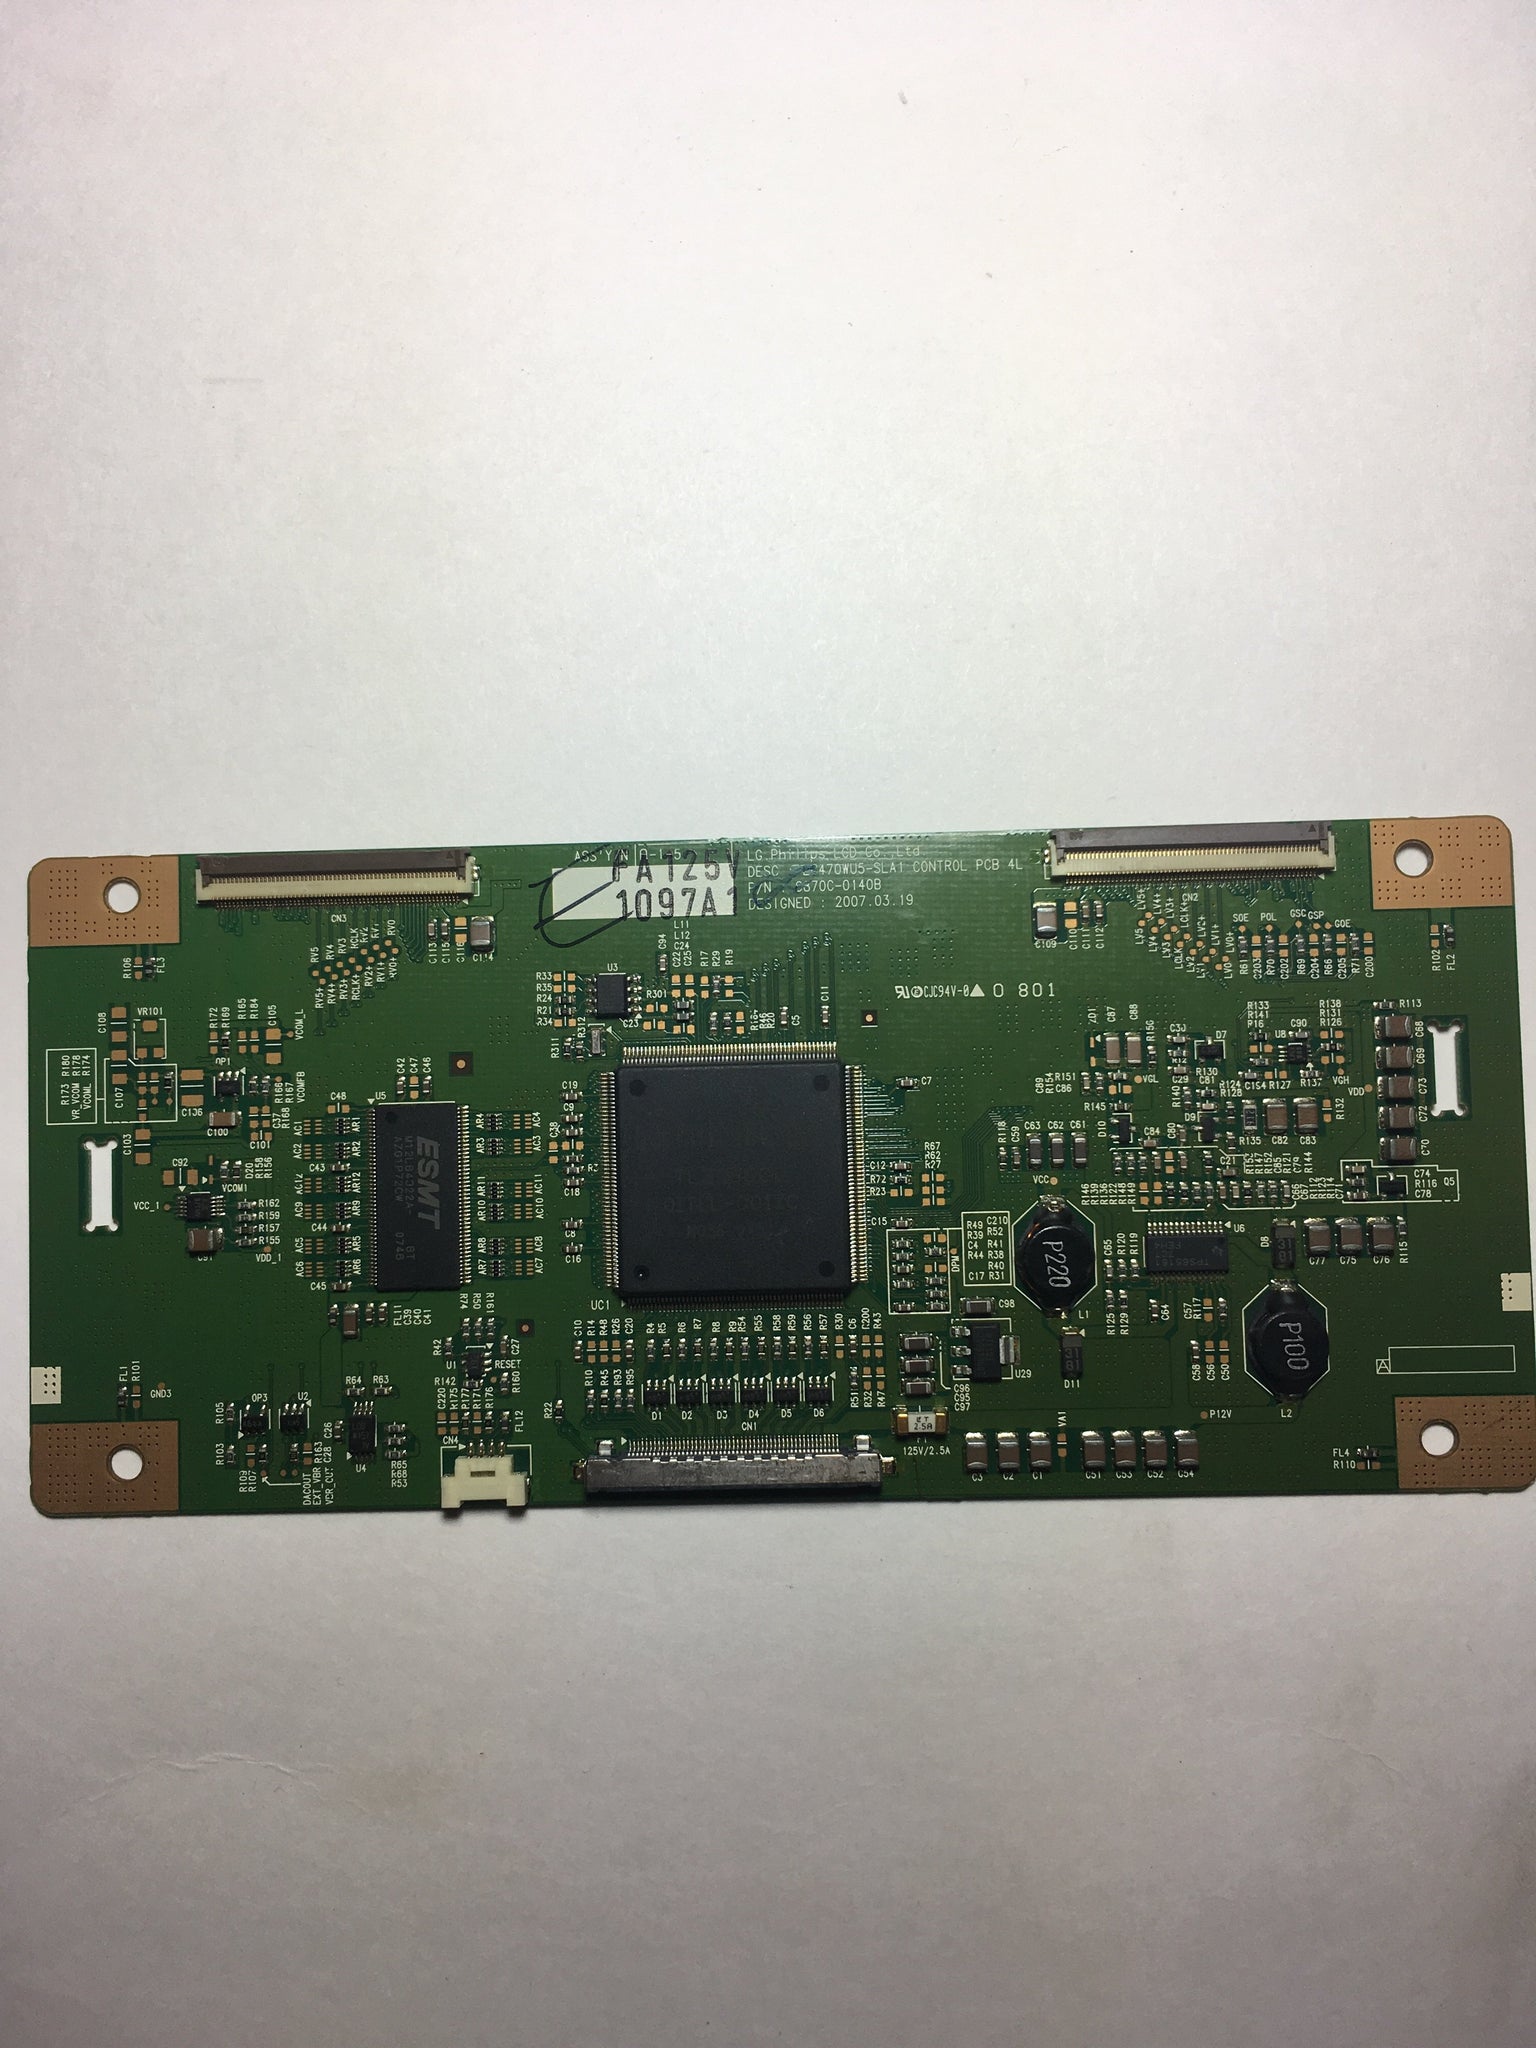 LG Philips 6871L-1097A (6870C-0140B) T-Con Board